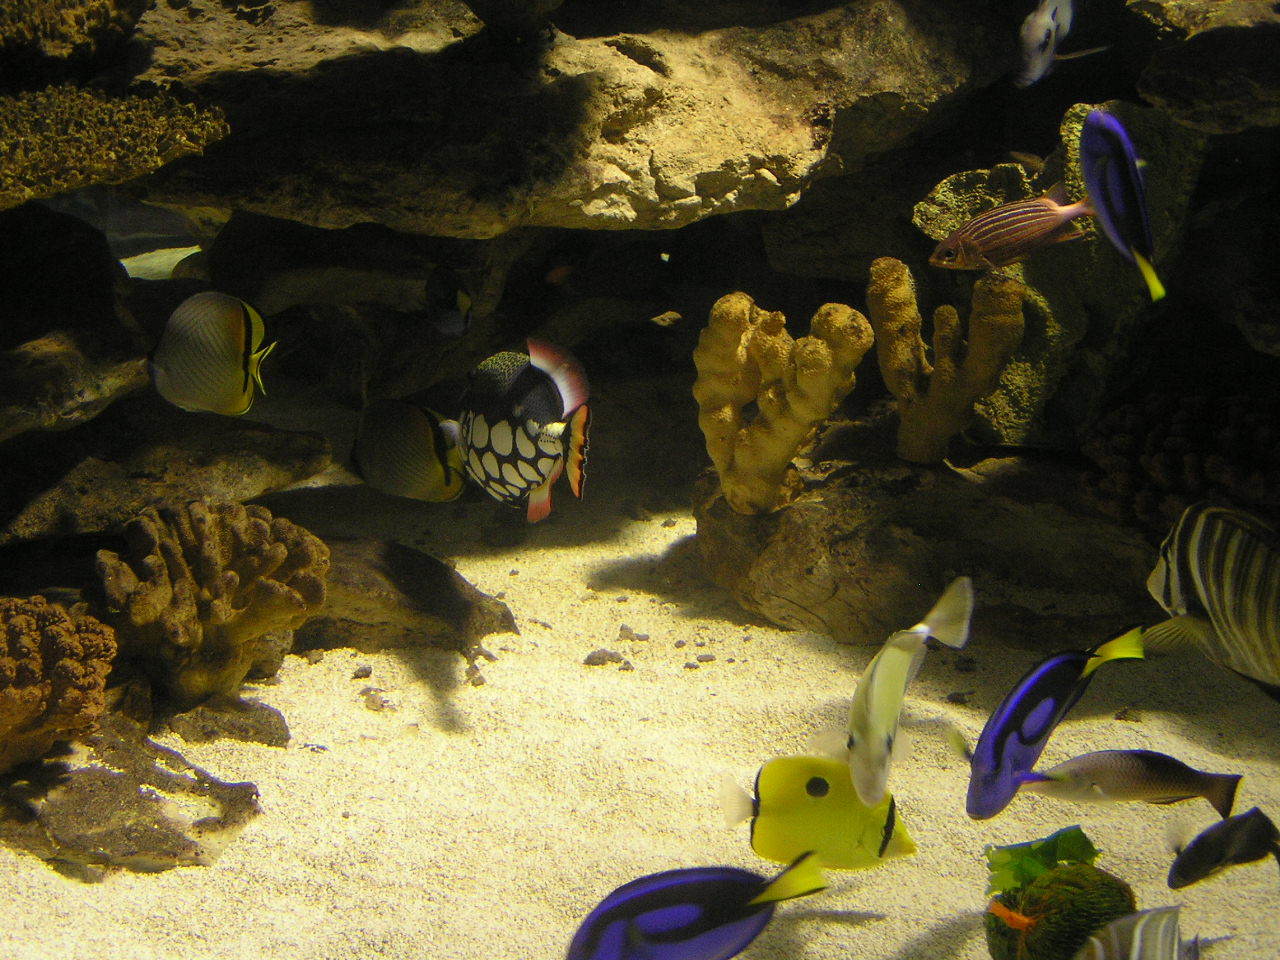 044 Cape Town Aquarium